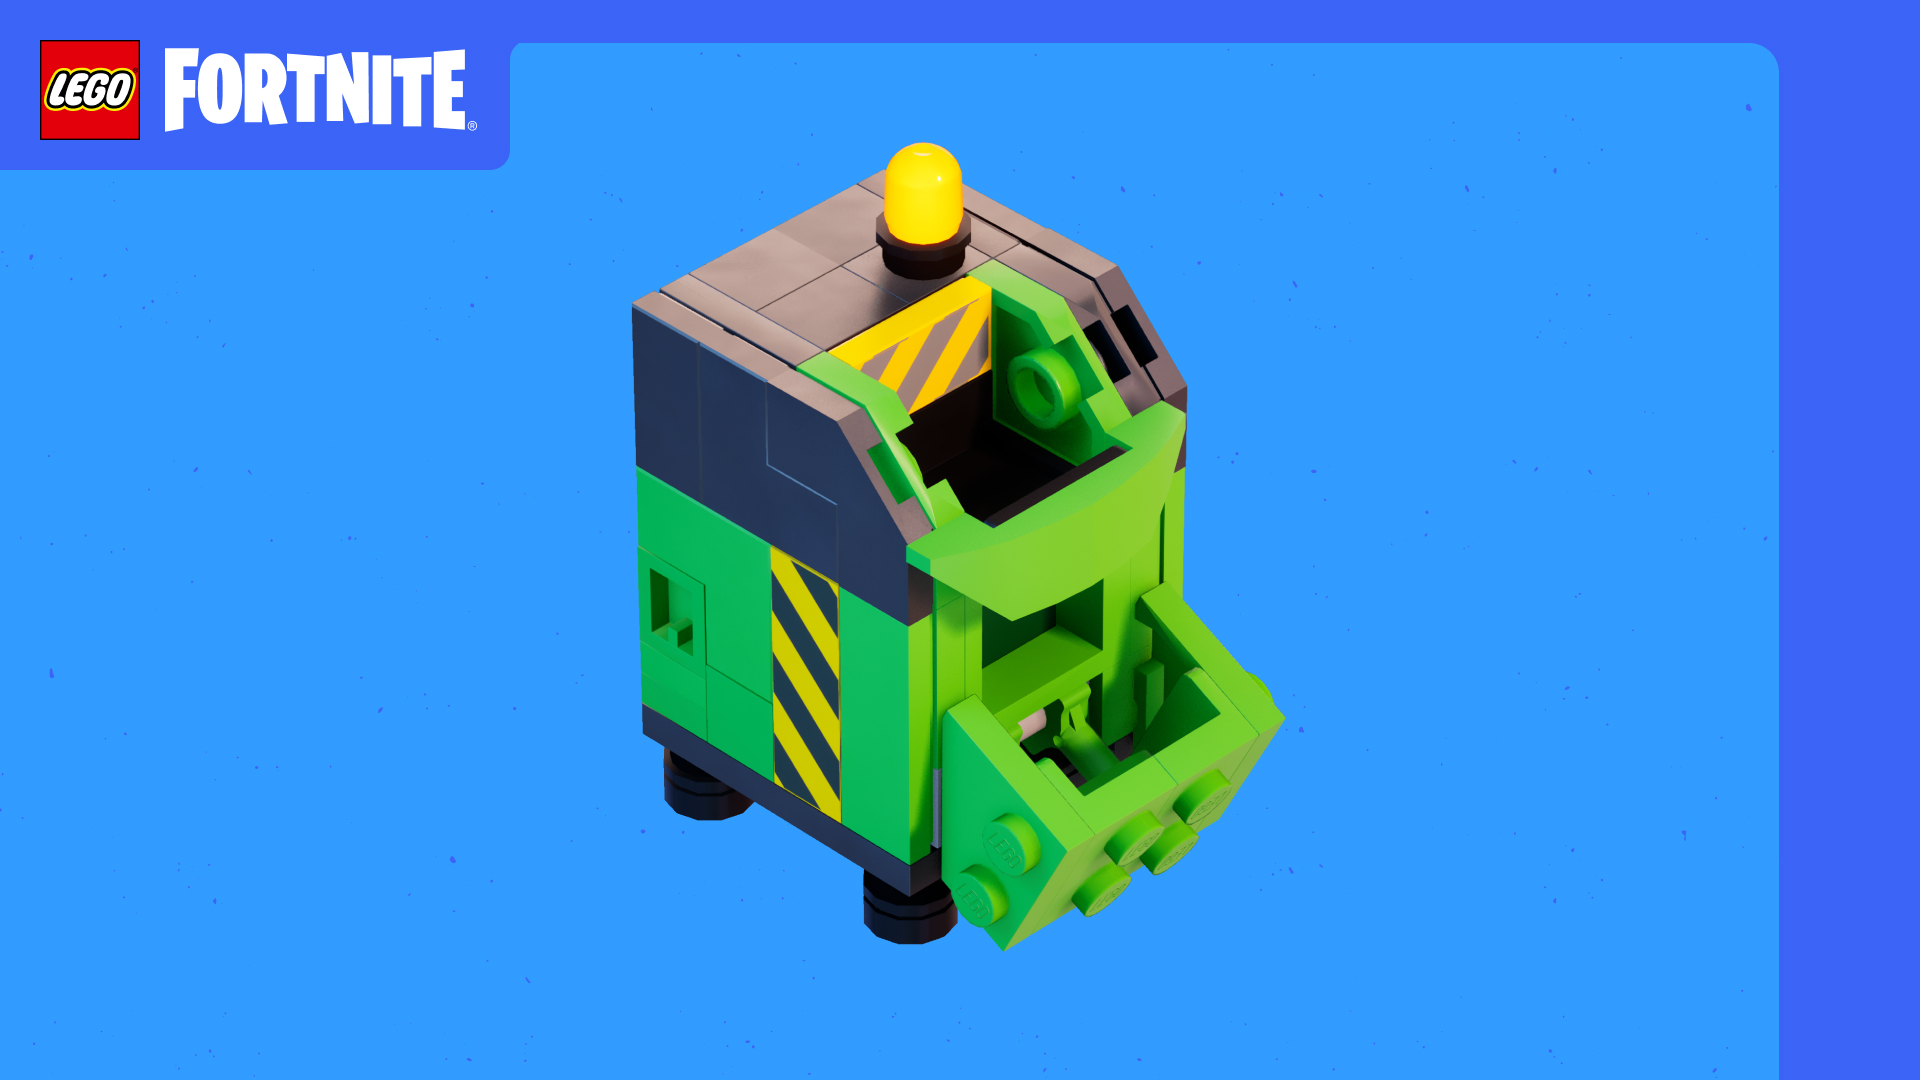 Vehicule Lego Fortnite